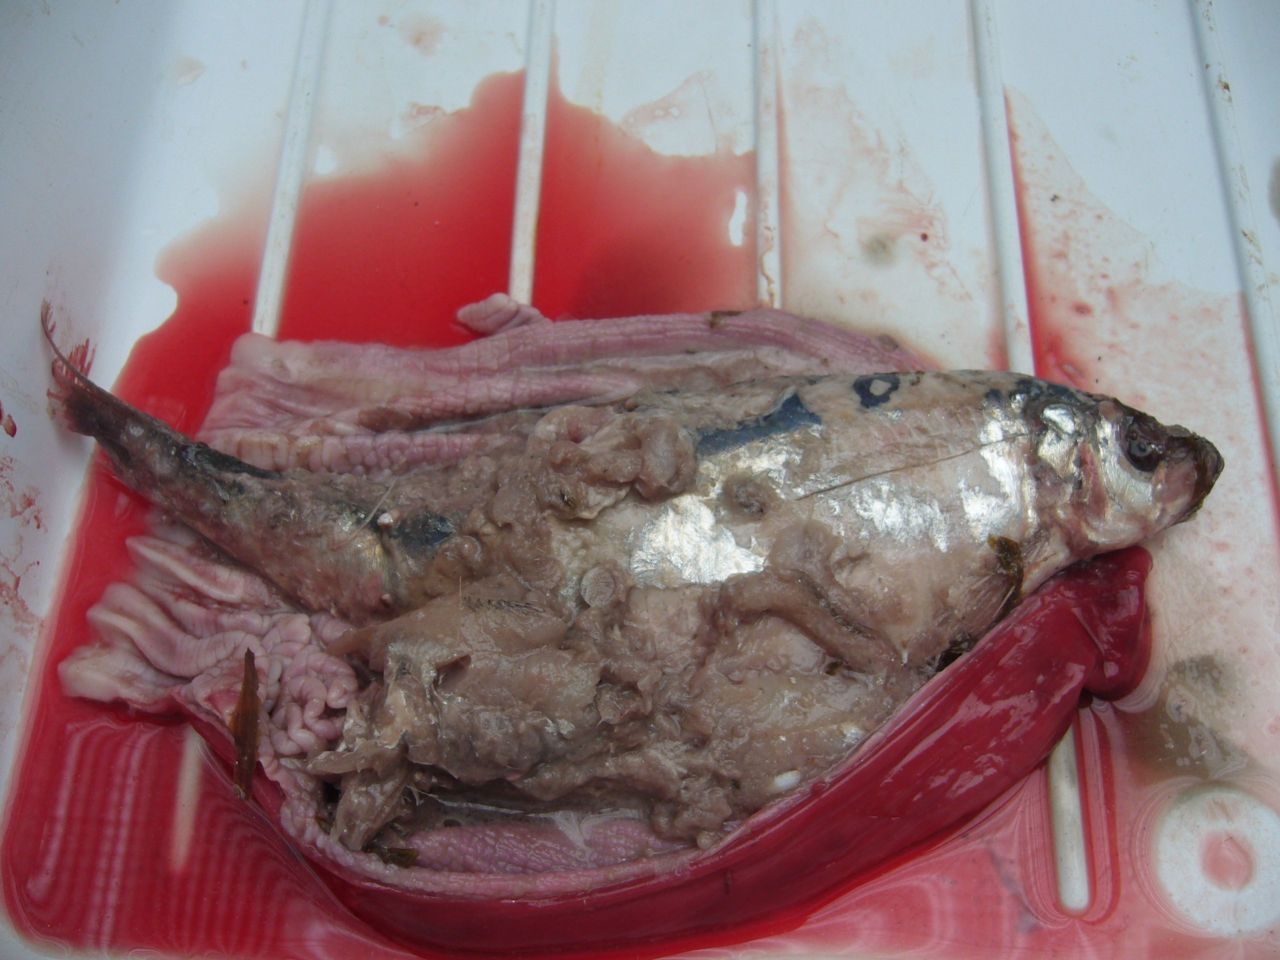 Een geopende maag waarin een nog vrij gave volwassen haring bleek te zitten, met daarbij nog een paar vrijwel verteerde vissen. Typisch een maag van een volwassen bruinvis (foto: Annika Krauthof)